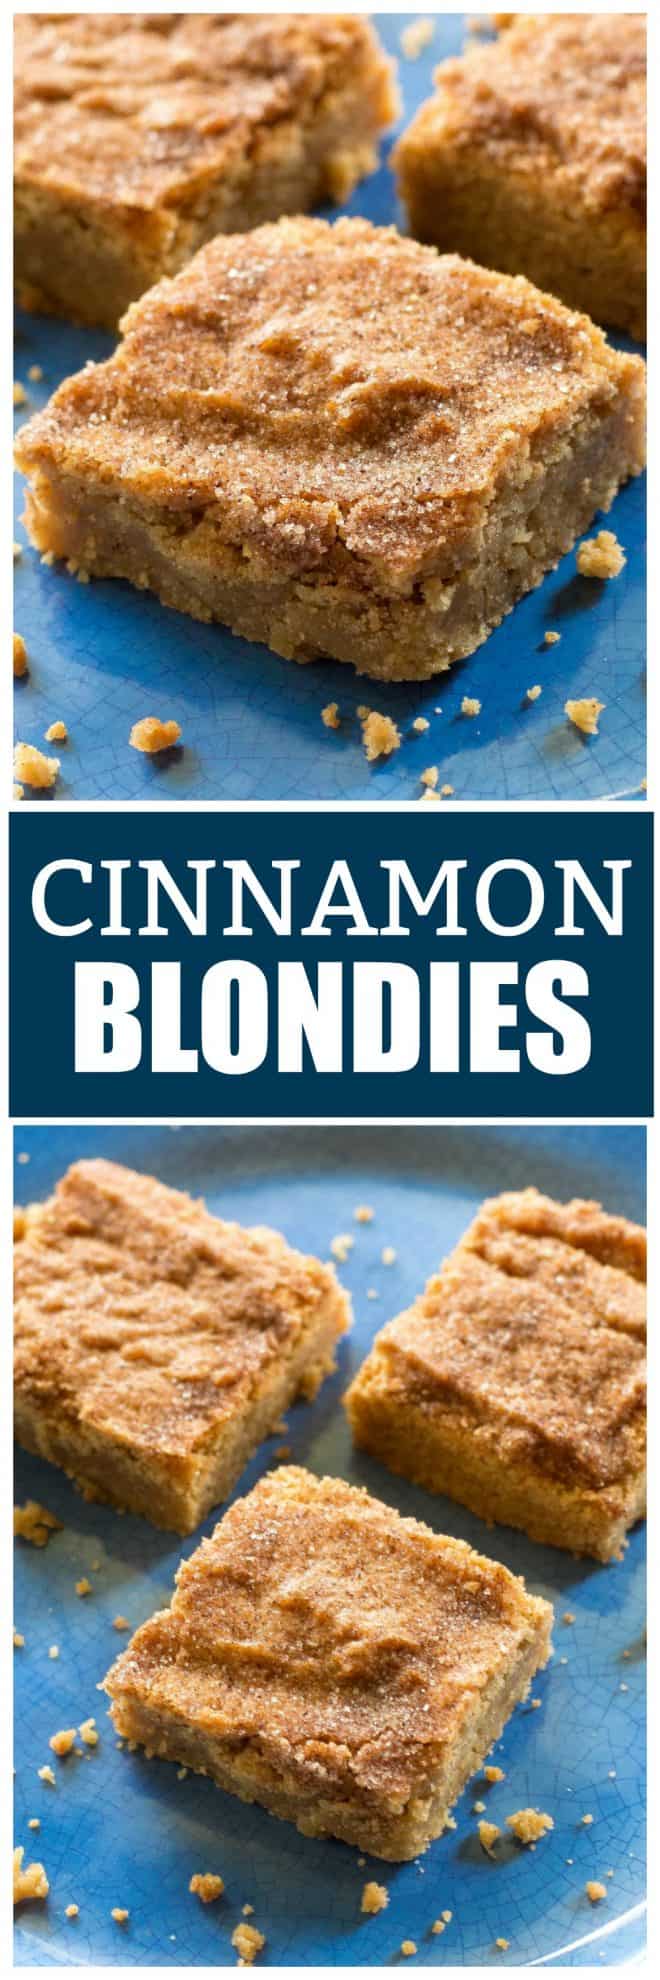 cinnamon blondies